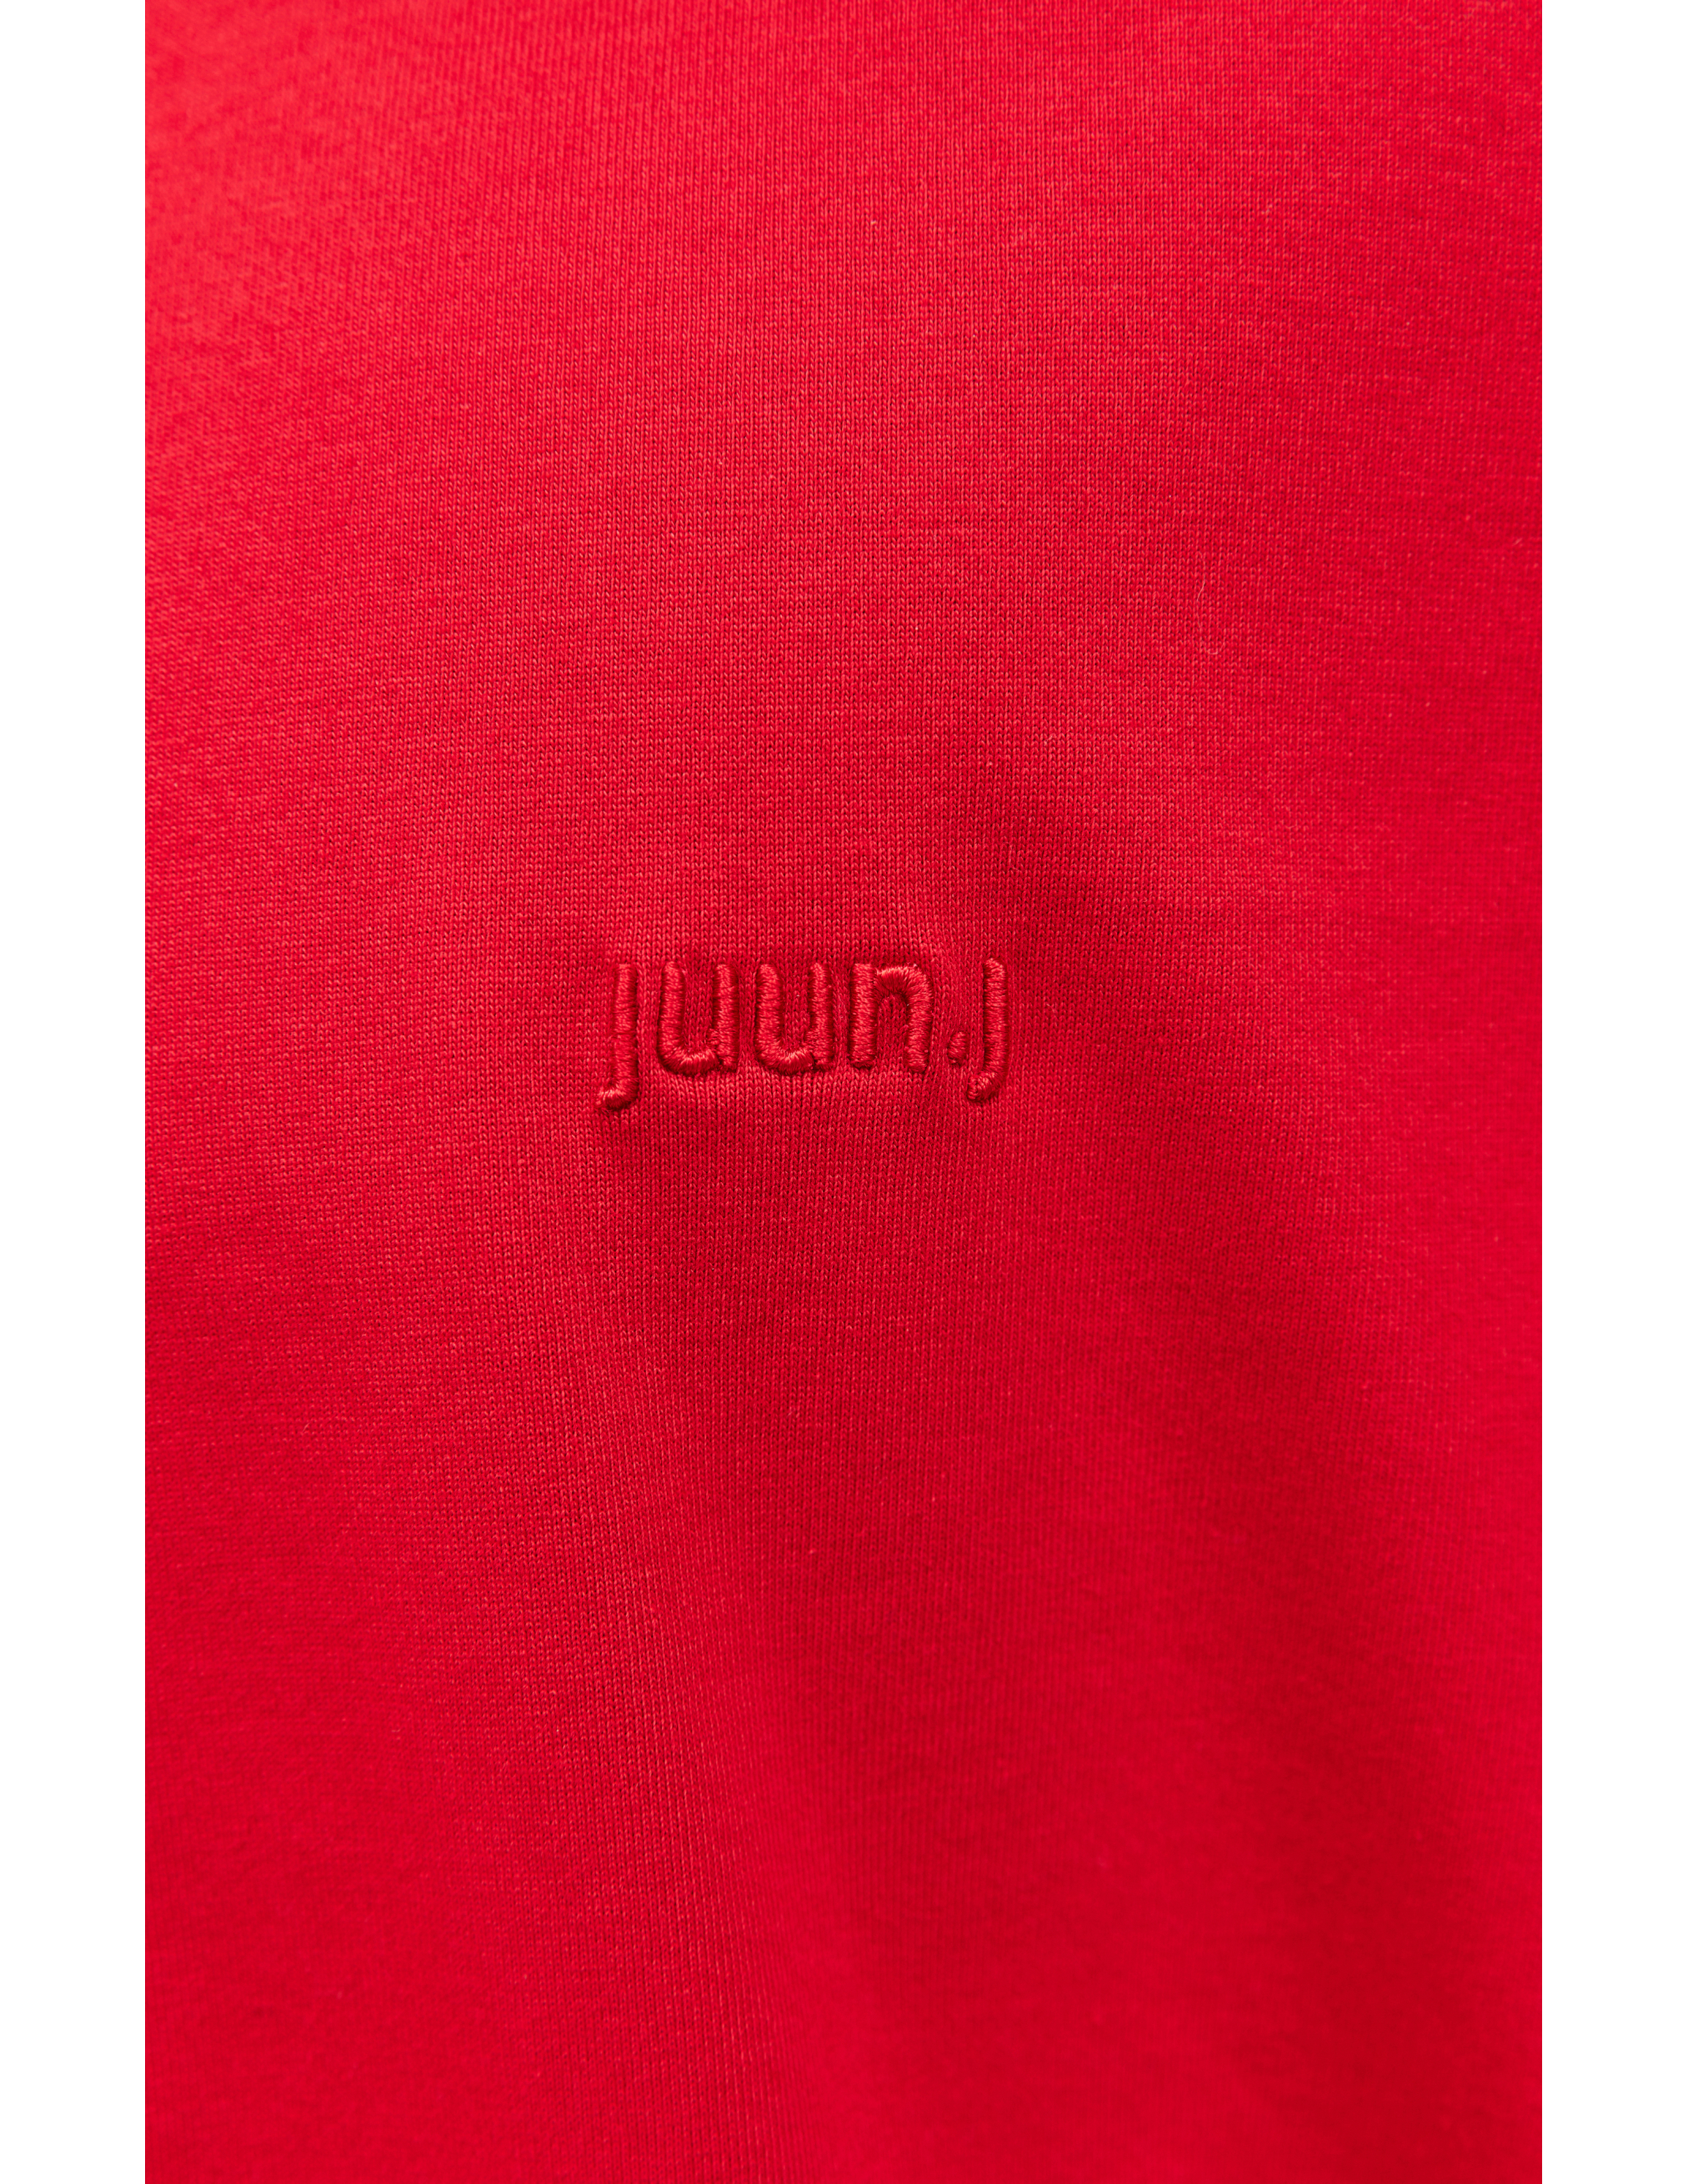 Оверсайз футболка с принтом Juun.J JC3342P146, размер M;L - фото 4